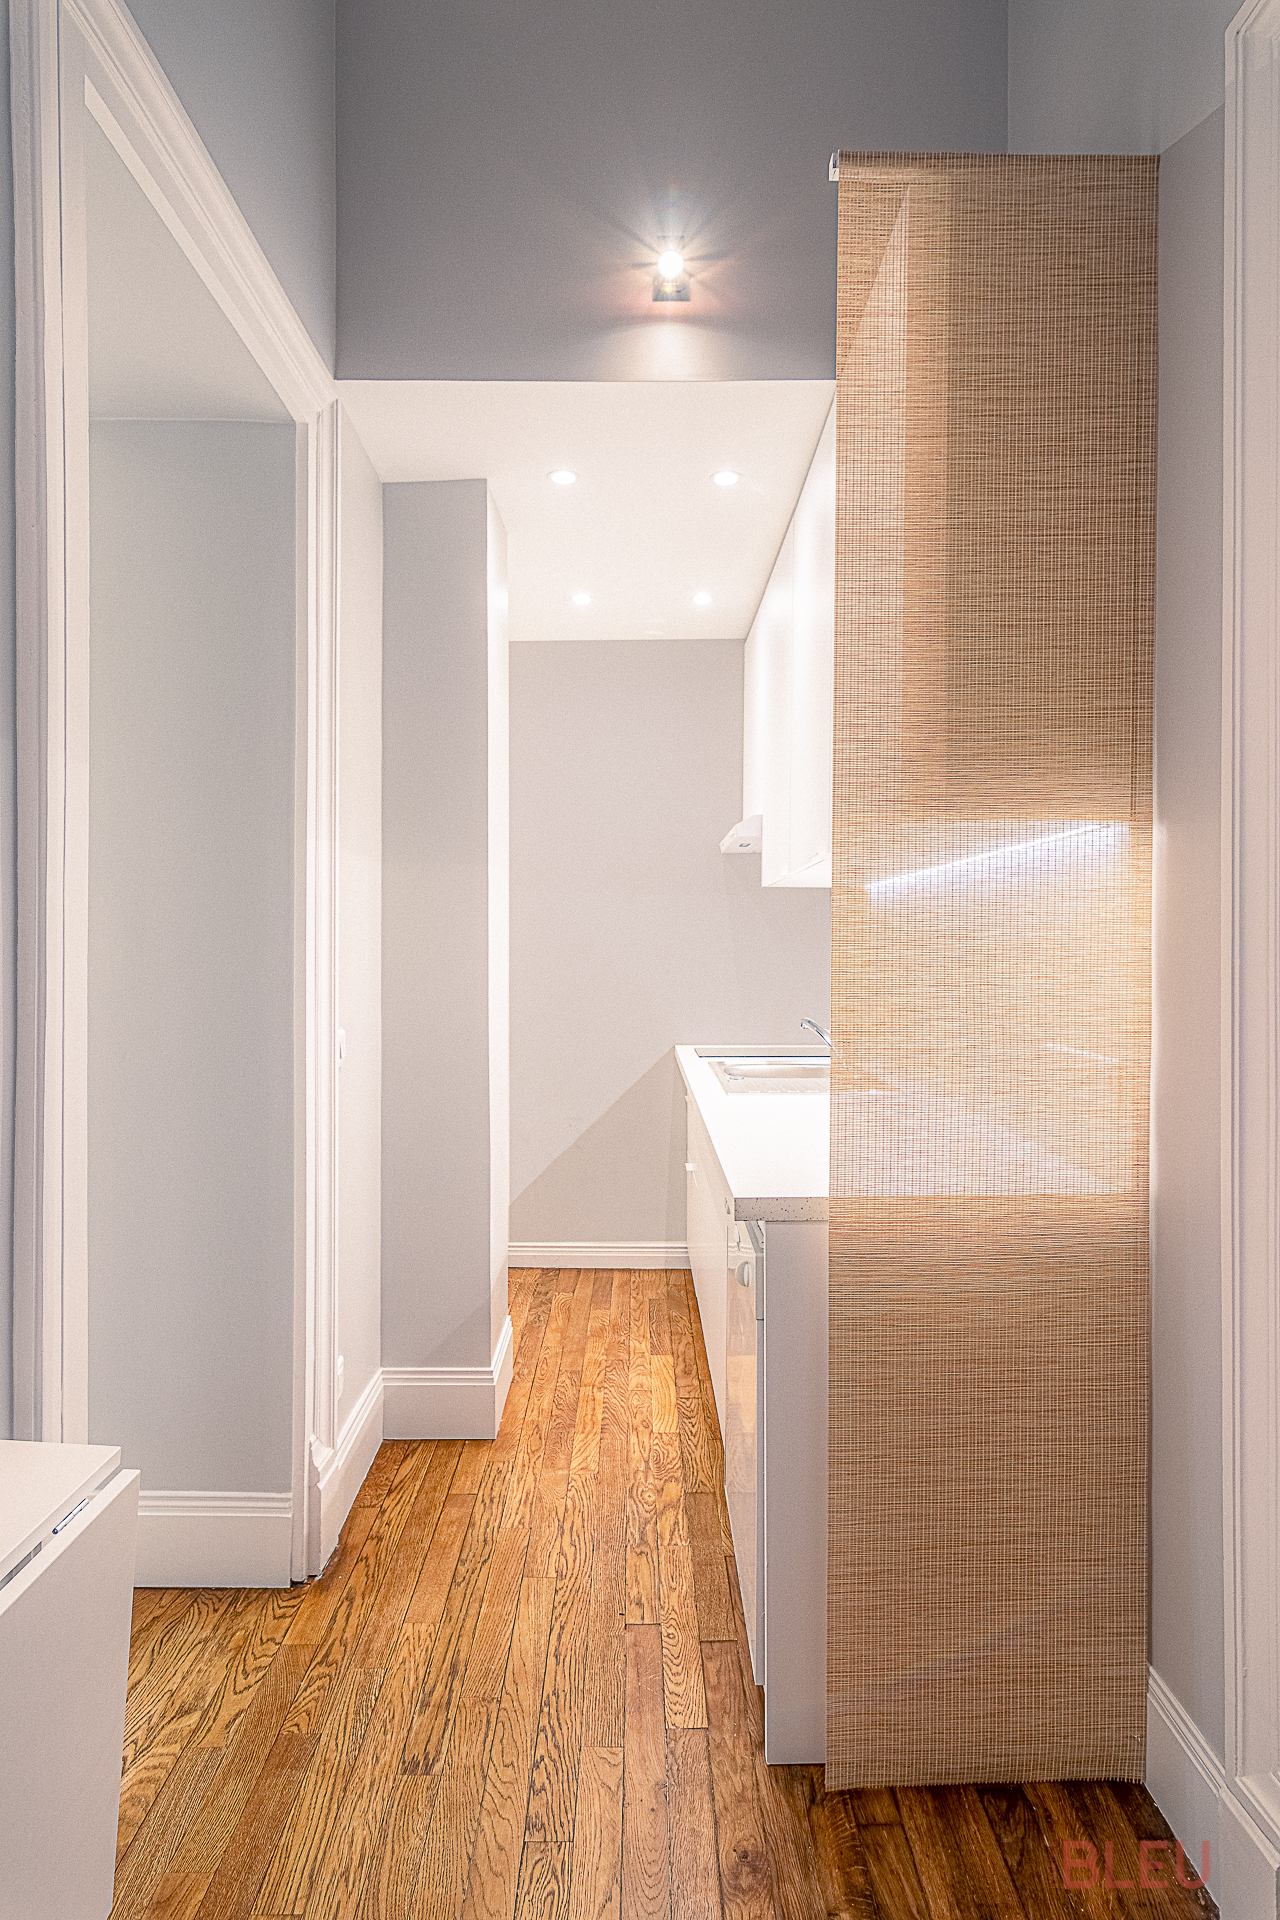 Cuisine moderne et minimaliste dans un couloir étroit d'un appartement haussmannien rénové à Paris, avec parquet clair et agencement optimisé - architecte intérieur Paris, rénovation appartement haussmannien.